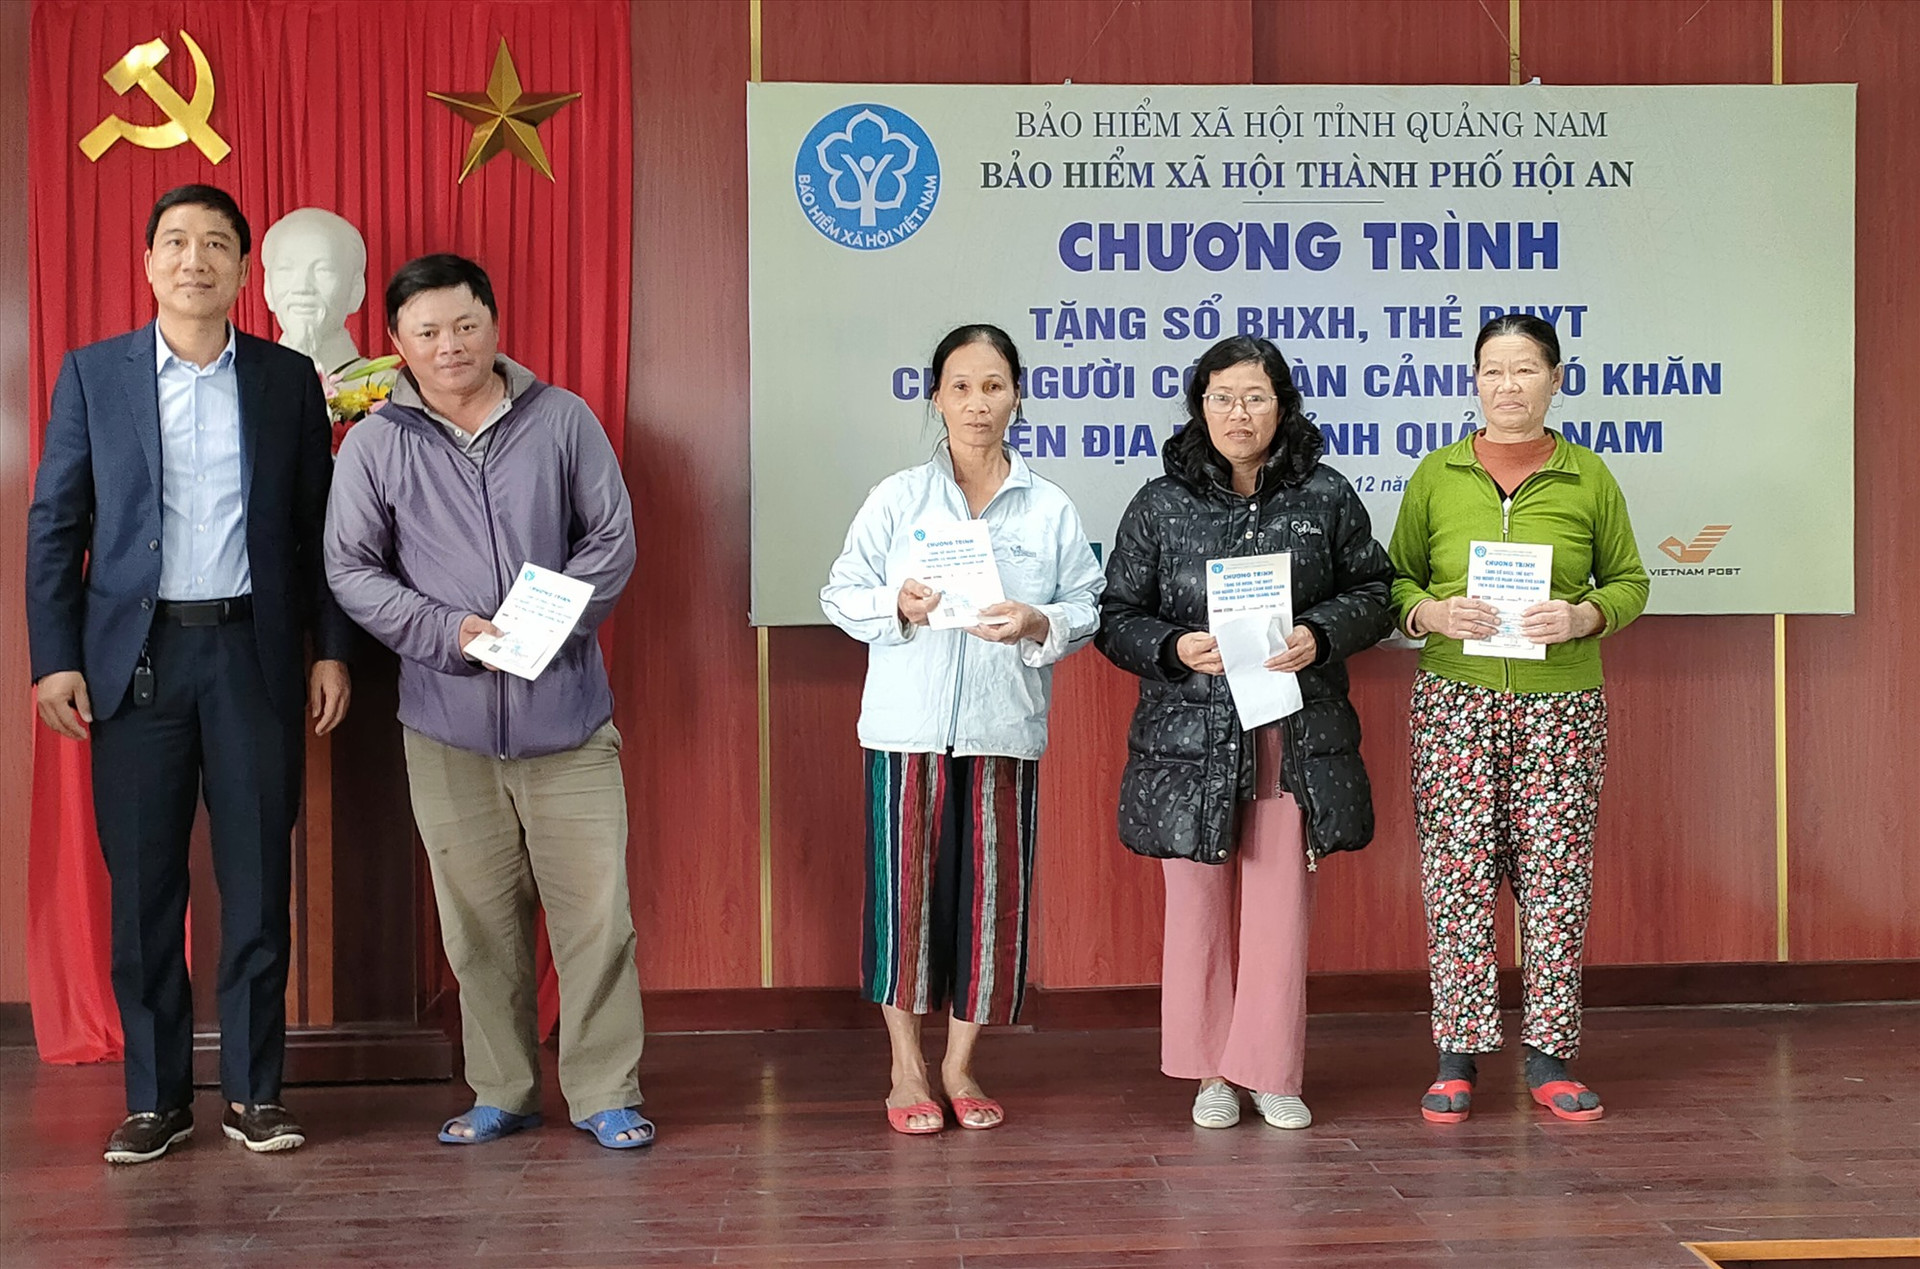 Đại diện Ngân hàng TMCP Ngoại thương Việt Nam - Chi nhánh Quảng Nam trao hỗ trợ 5 thẻ BHYT. Ảnh: MỸ LỆ